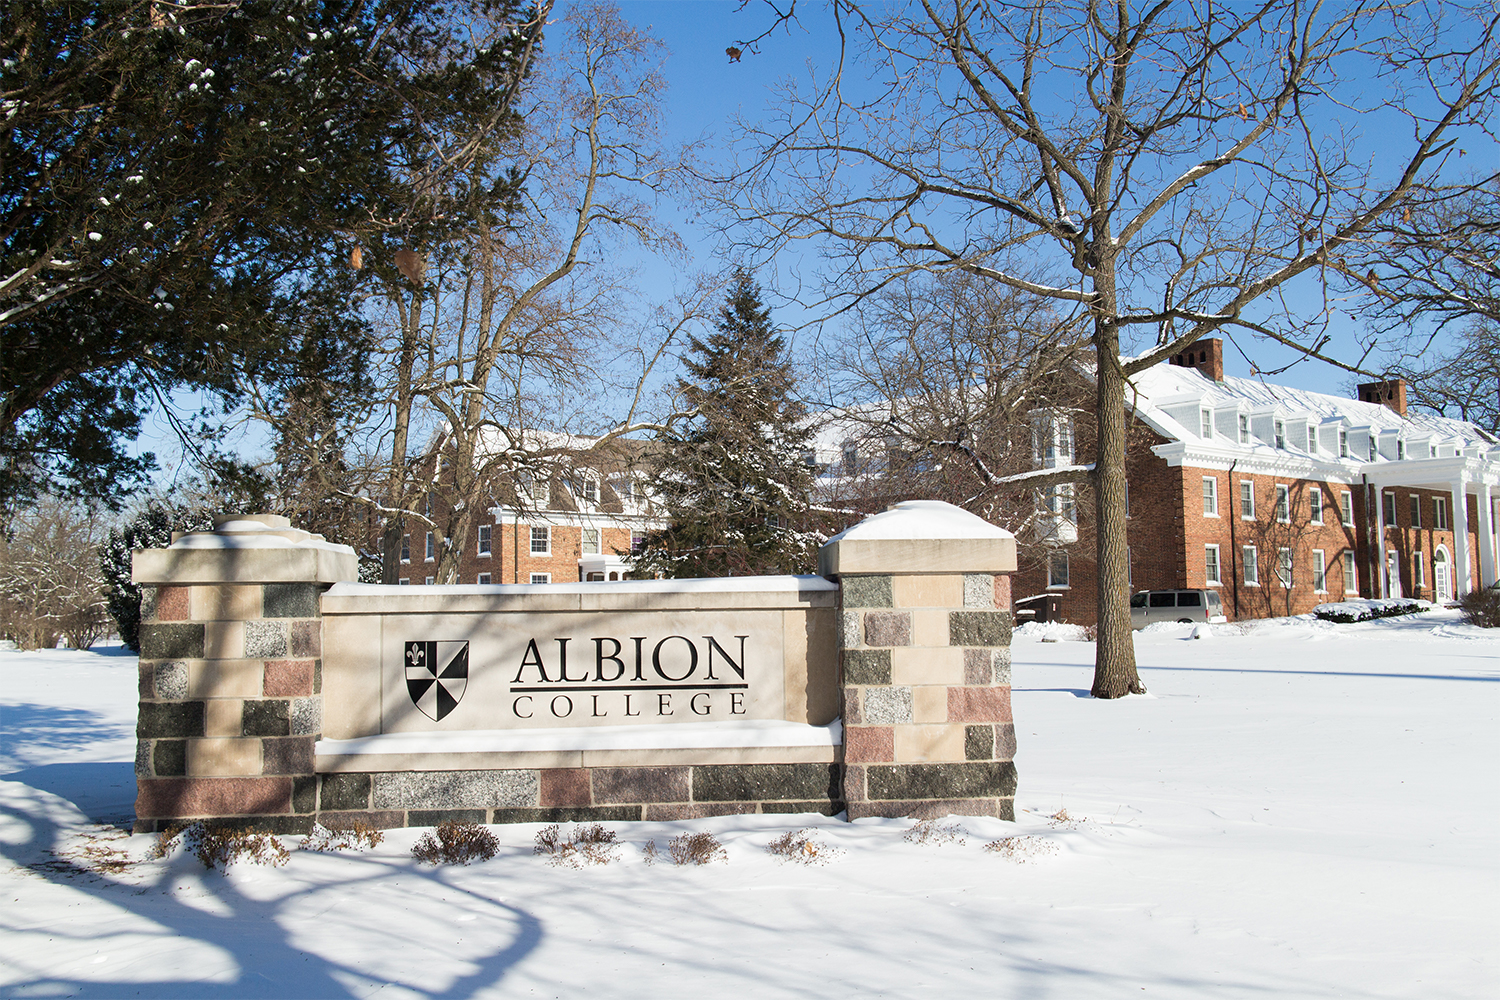 阿尔比恩学院（Albright College），来自美国的一所私立大学，成立于1861年，是一所全国性的文理学院，是优秀学生的乐园，位于美国密歇根州。